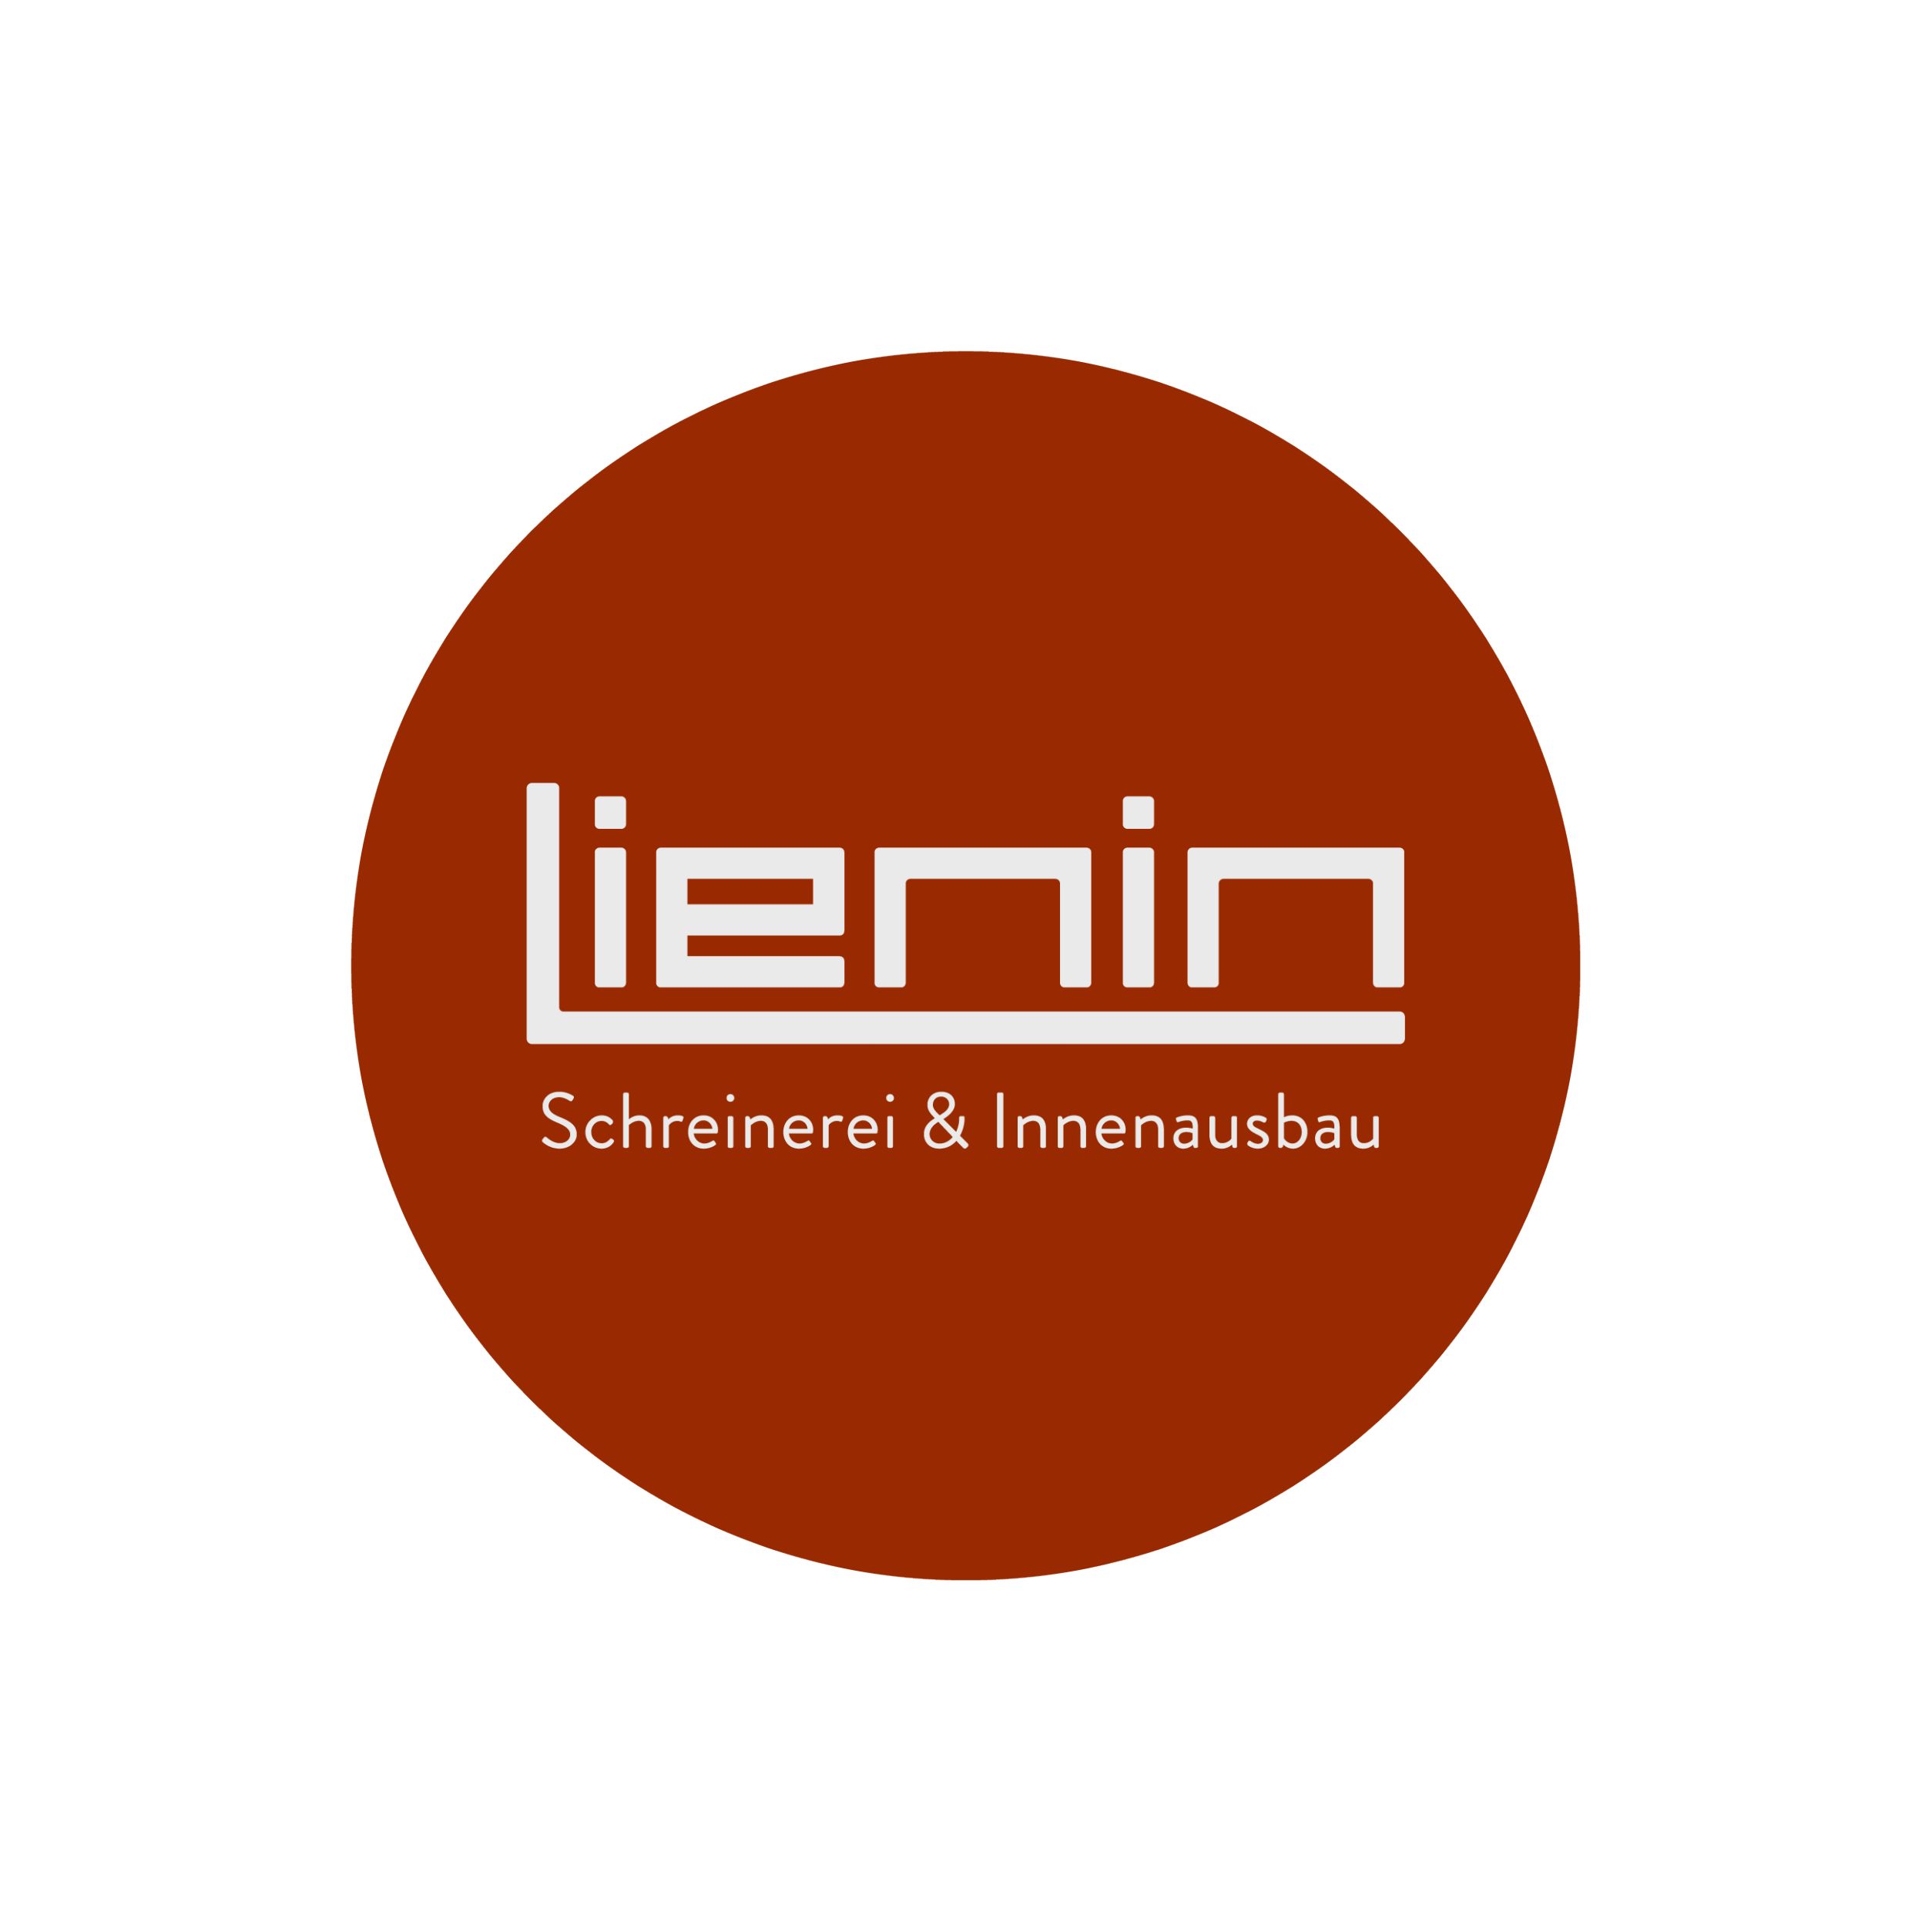 Lienin GmbH Schreinerei & Innenausbau